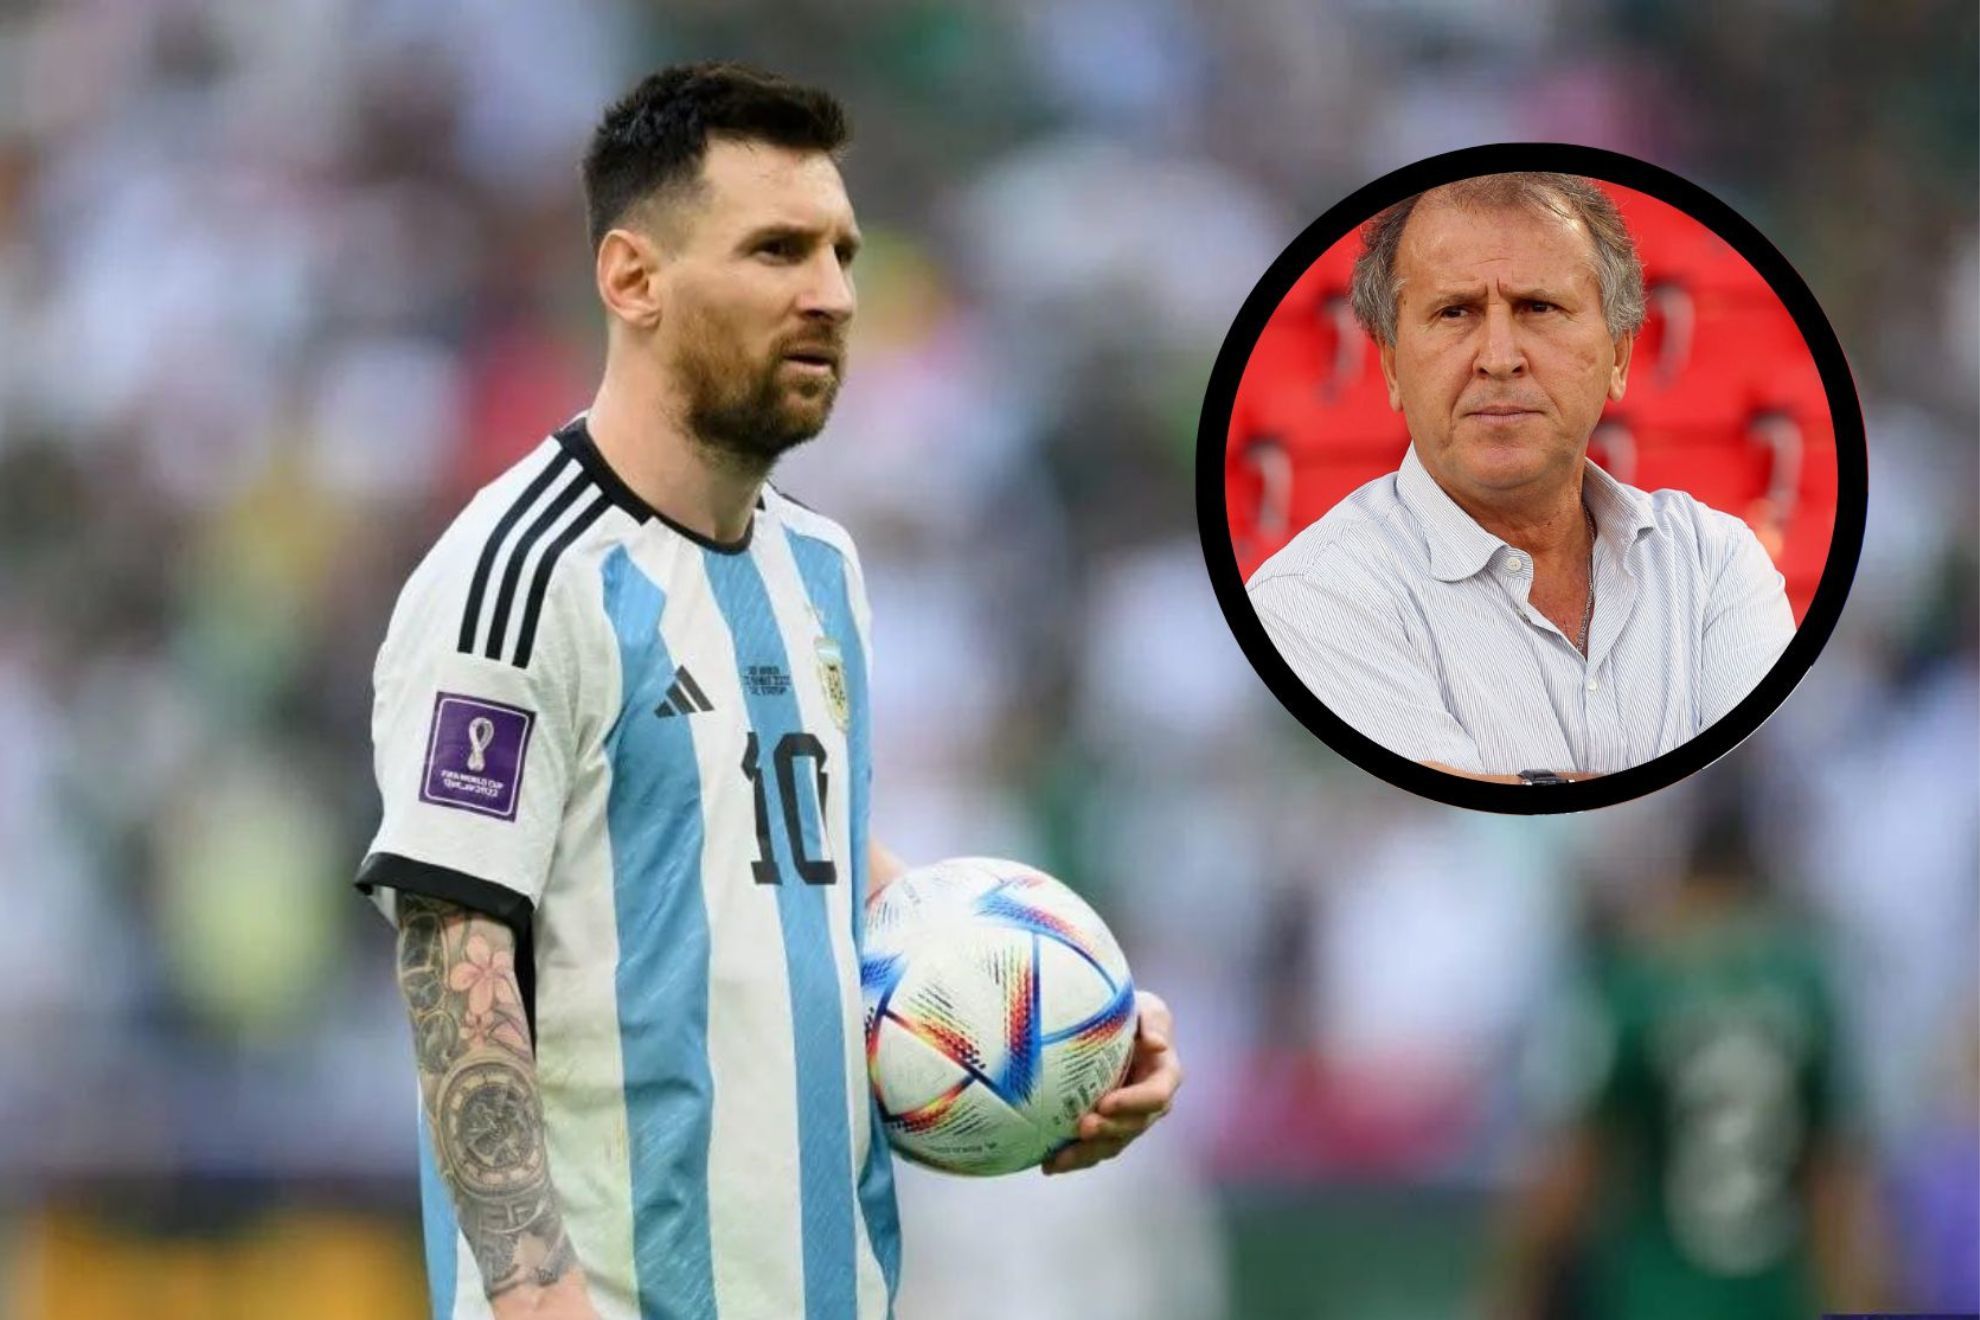 El vergonzoso ataque de Zico a la figura de Leo Messi: "Creo que le falta liderazgo"